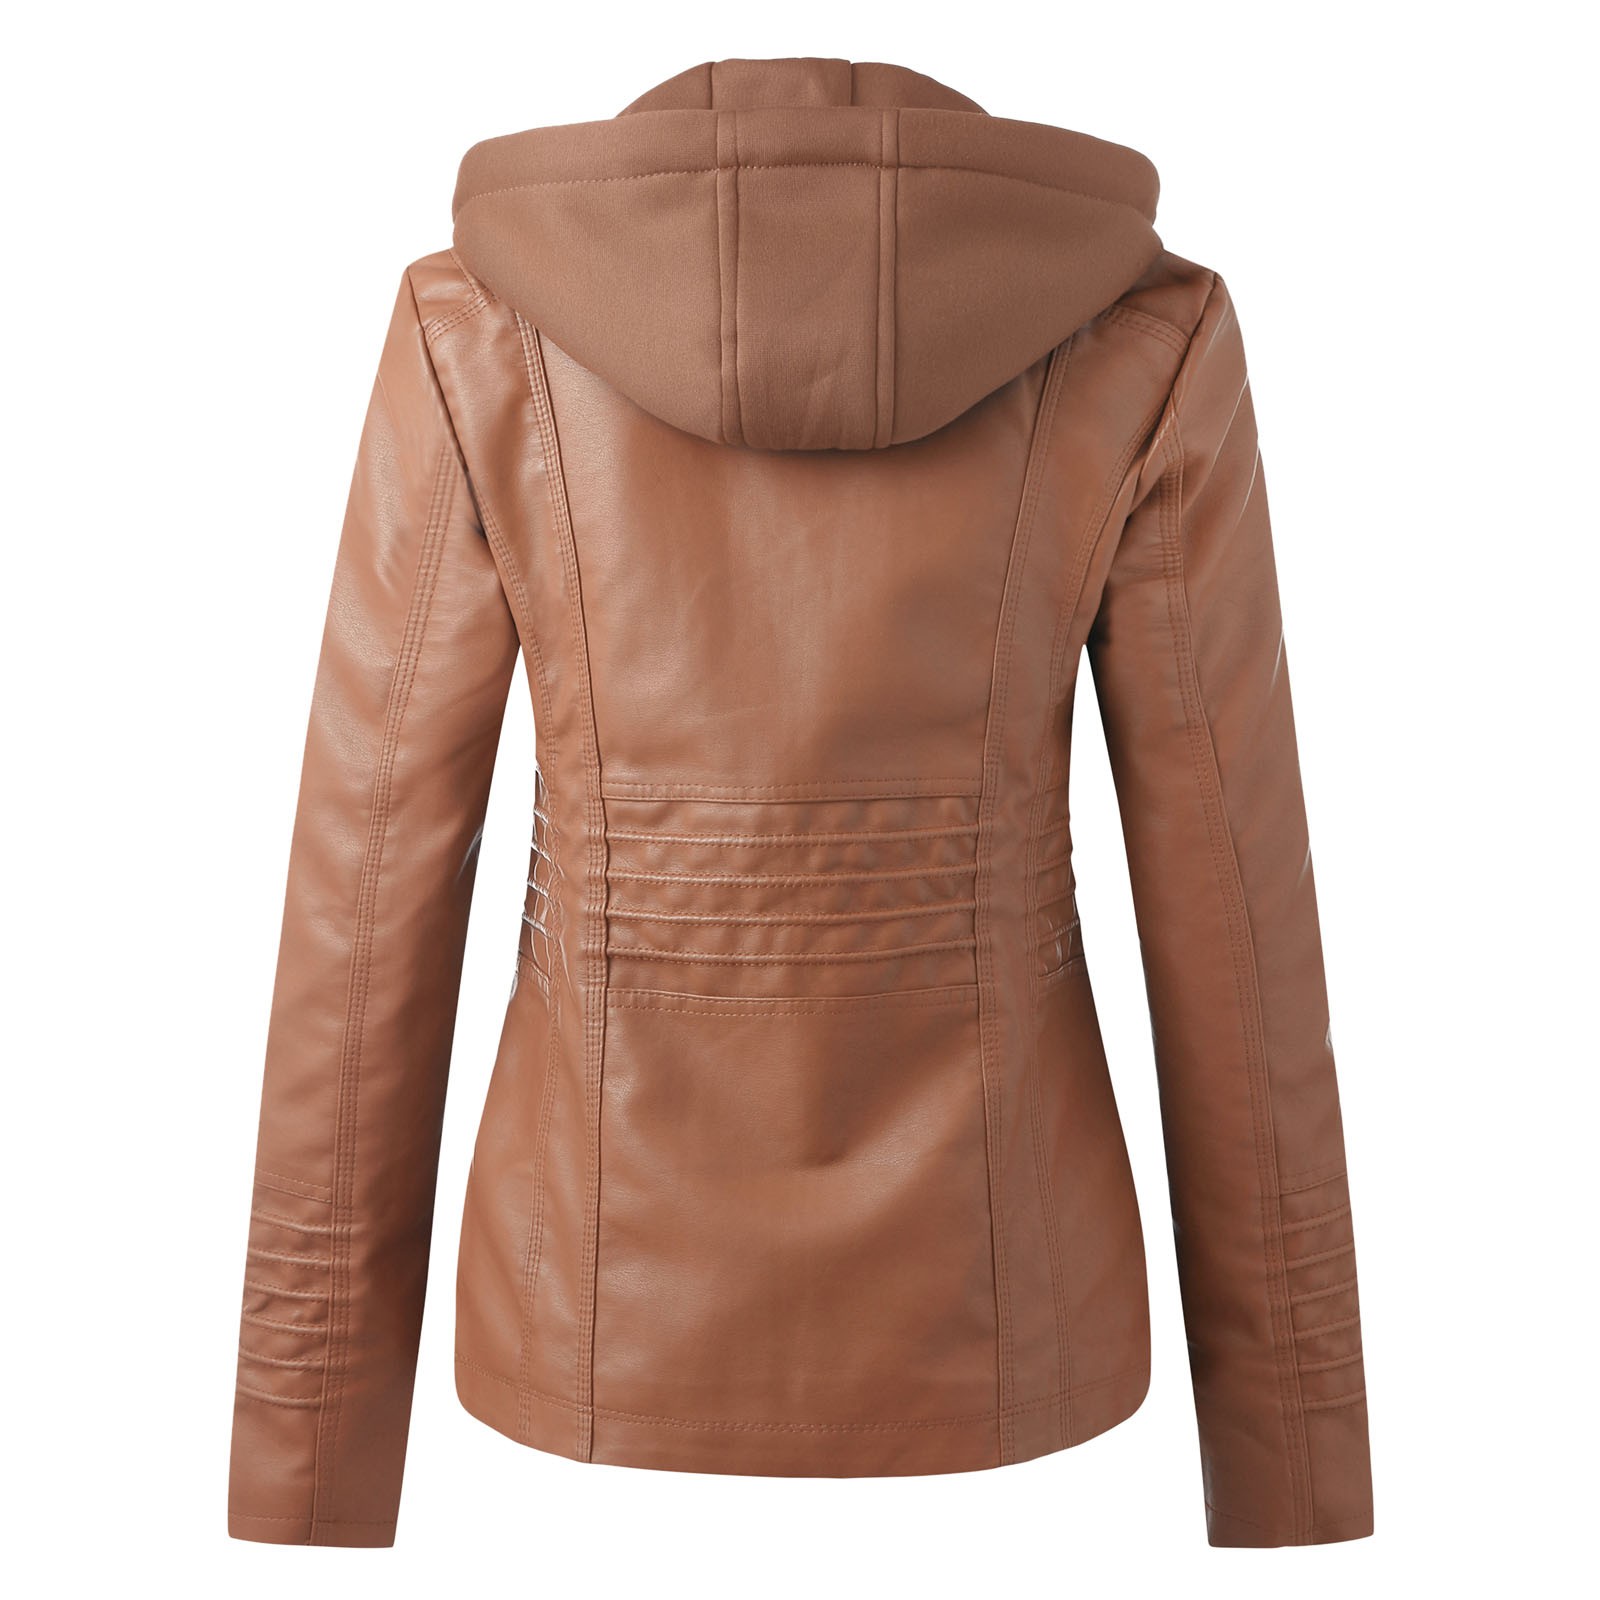 Bescita Women's Slim Leather Stand Collar Zip Motorcycle Suit Belt Coat Jacket Tops - image 2 of 5